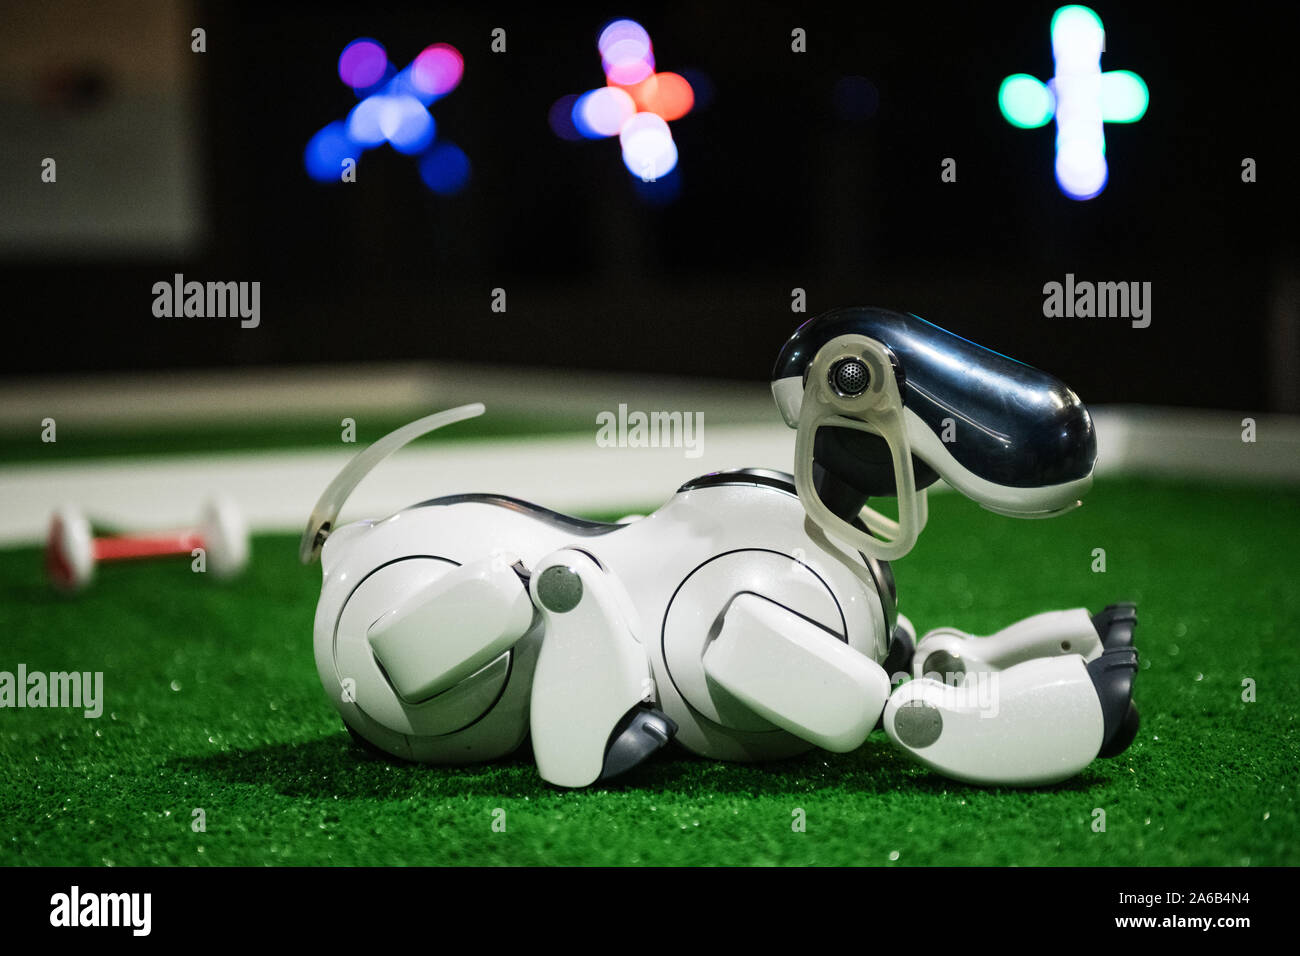 BRATISLAVA, SLOVAKIA - OCT 25, 2019: Robot dog AIBO demonstrates its skills at the mall in Bratislava, Slovakia Stock Photo